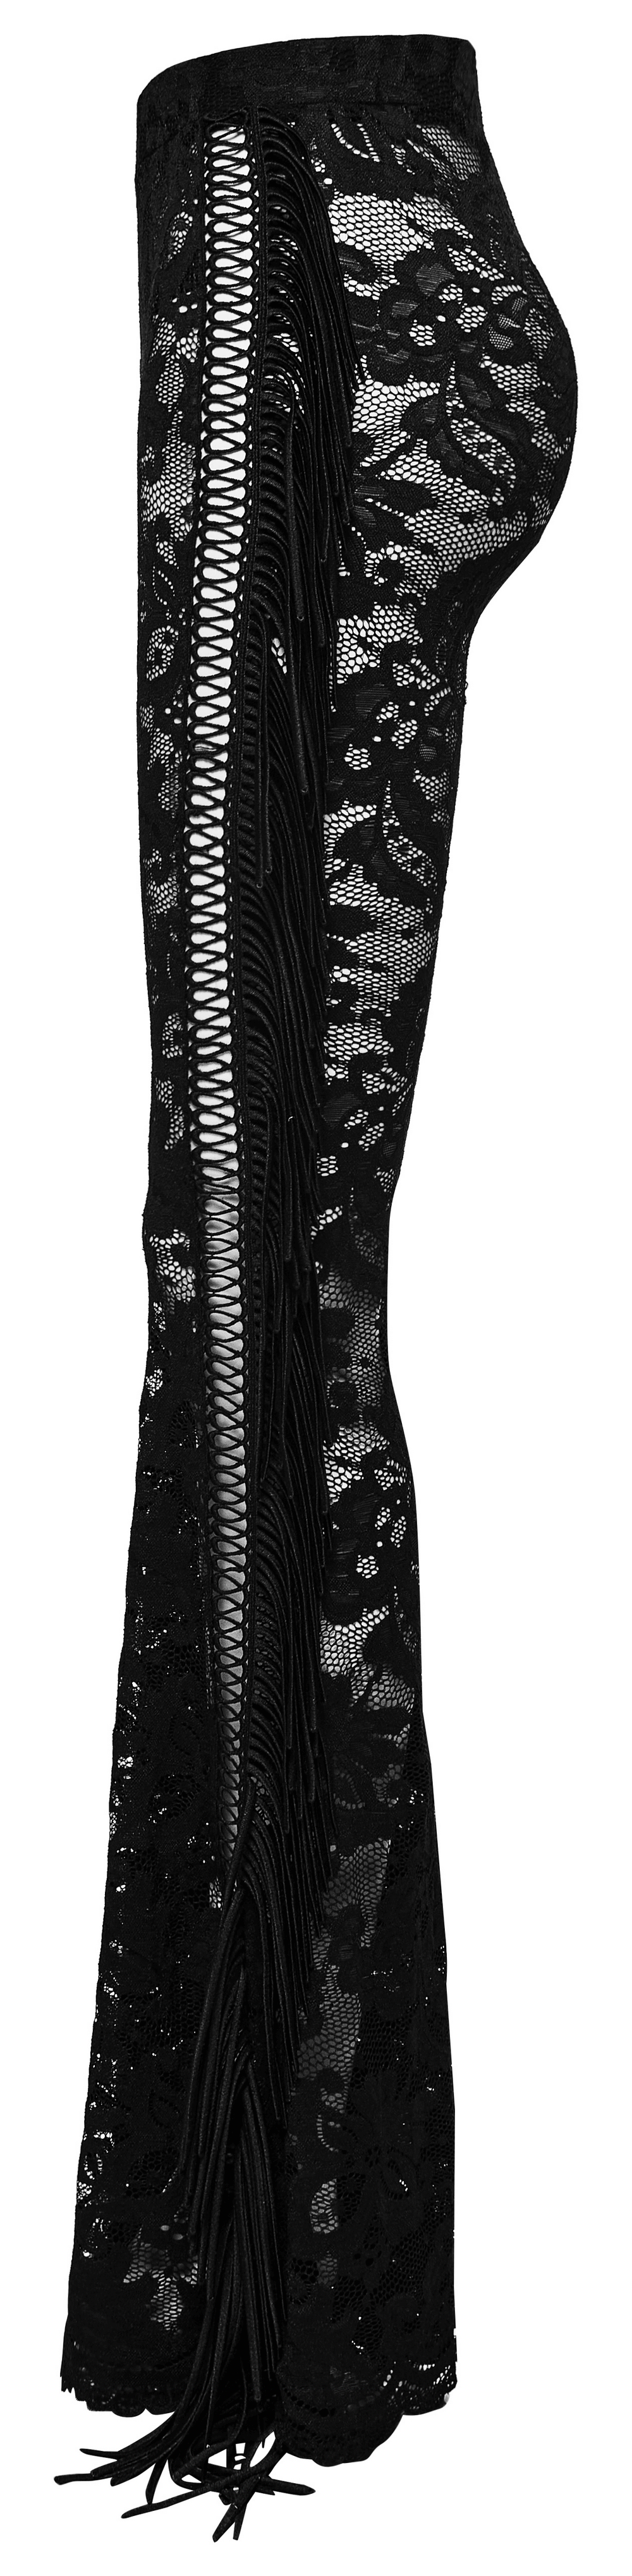 Stylish Gothic Black Lace Fringed Flare Pants